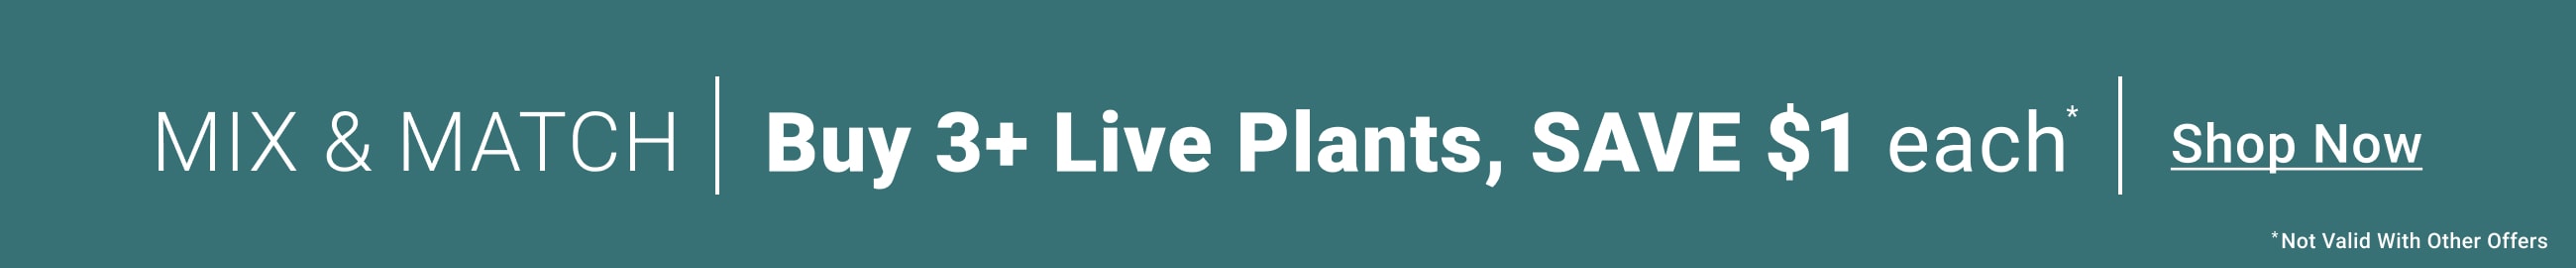 Buy 3+ Live Plants, Save $1 Each - Shop Now